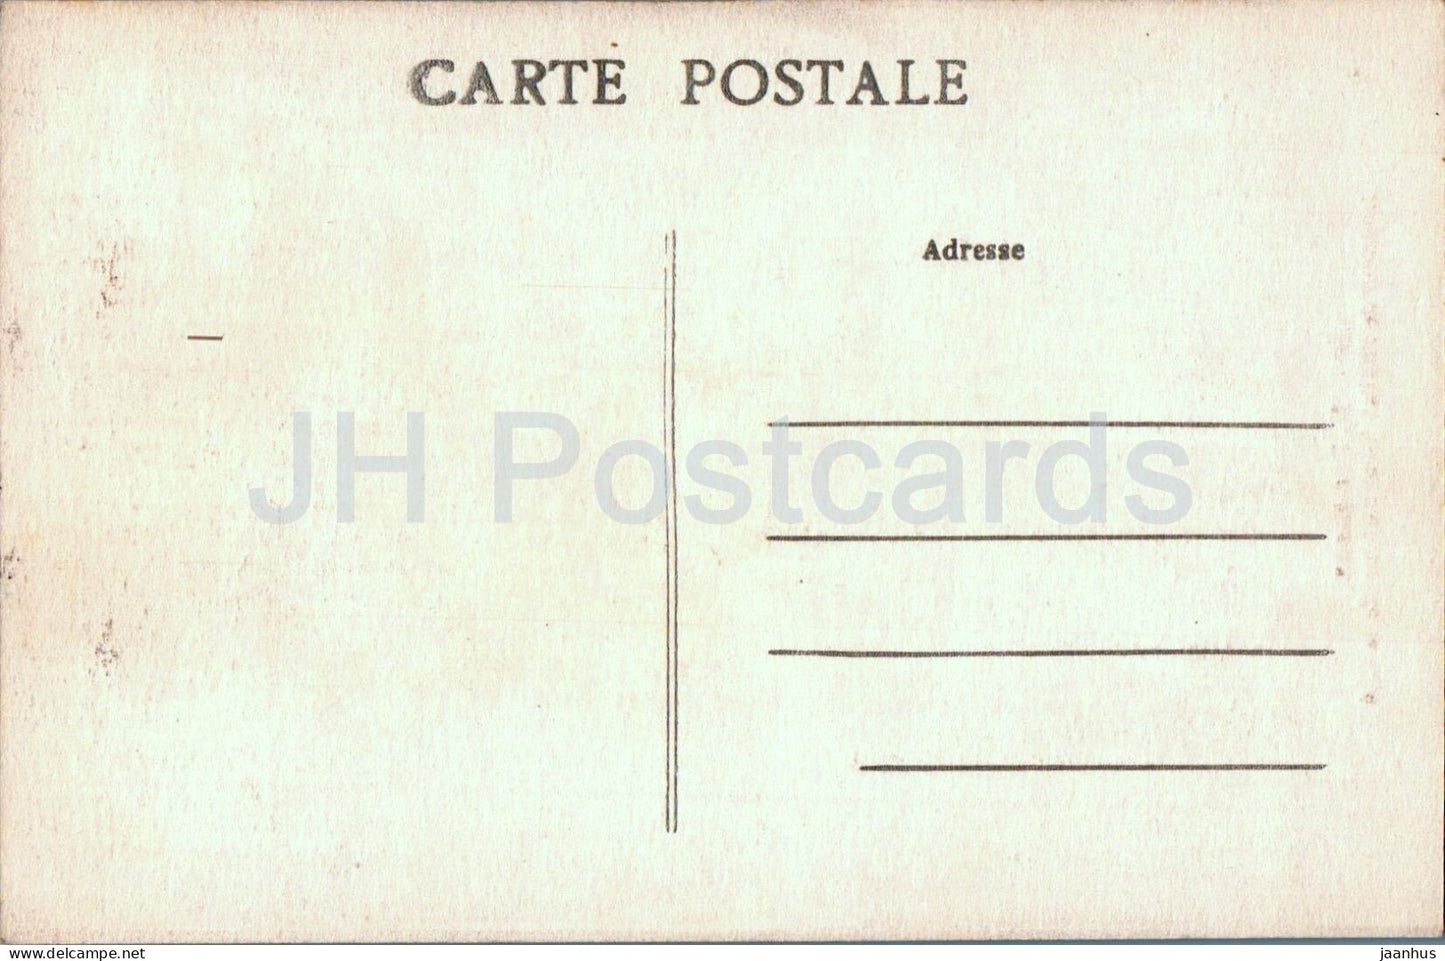 Périgueux - Intérieur de l'Eglise Saint Etienne de la Cité - église - 21 - carte postale ancienne - France - inutilisée 